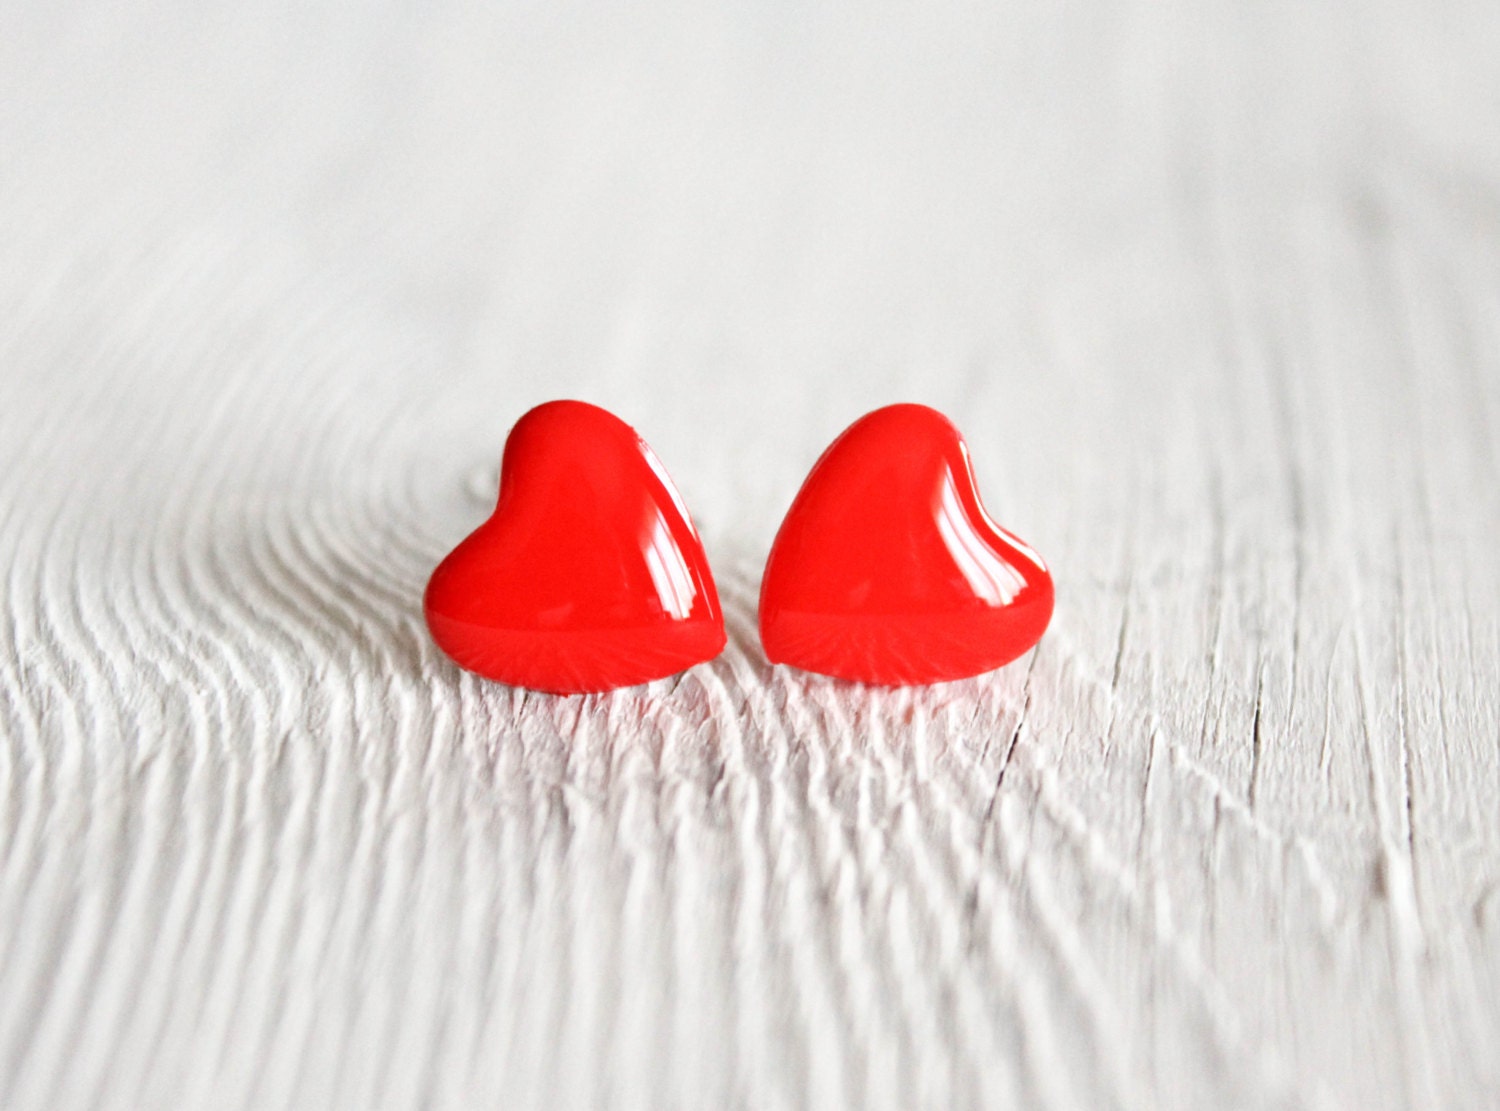 Tiny red heart stud earrings, post earrings, gift for her under 15, winter fashion by CuteBirdie - CuteBirdie